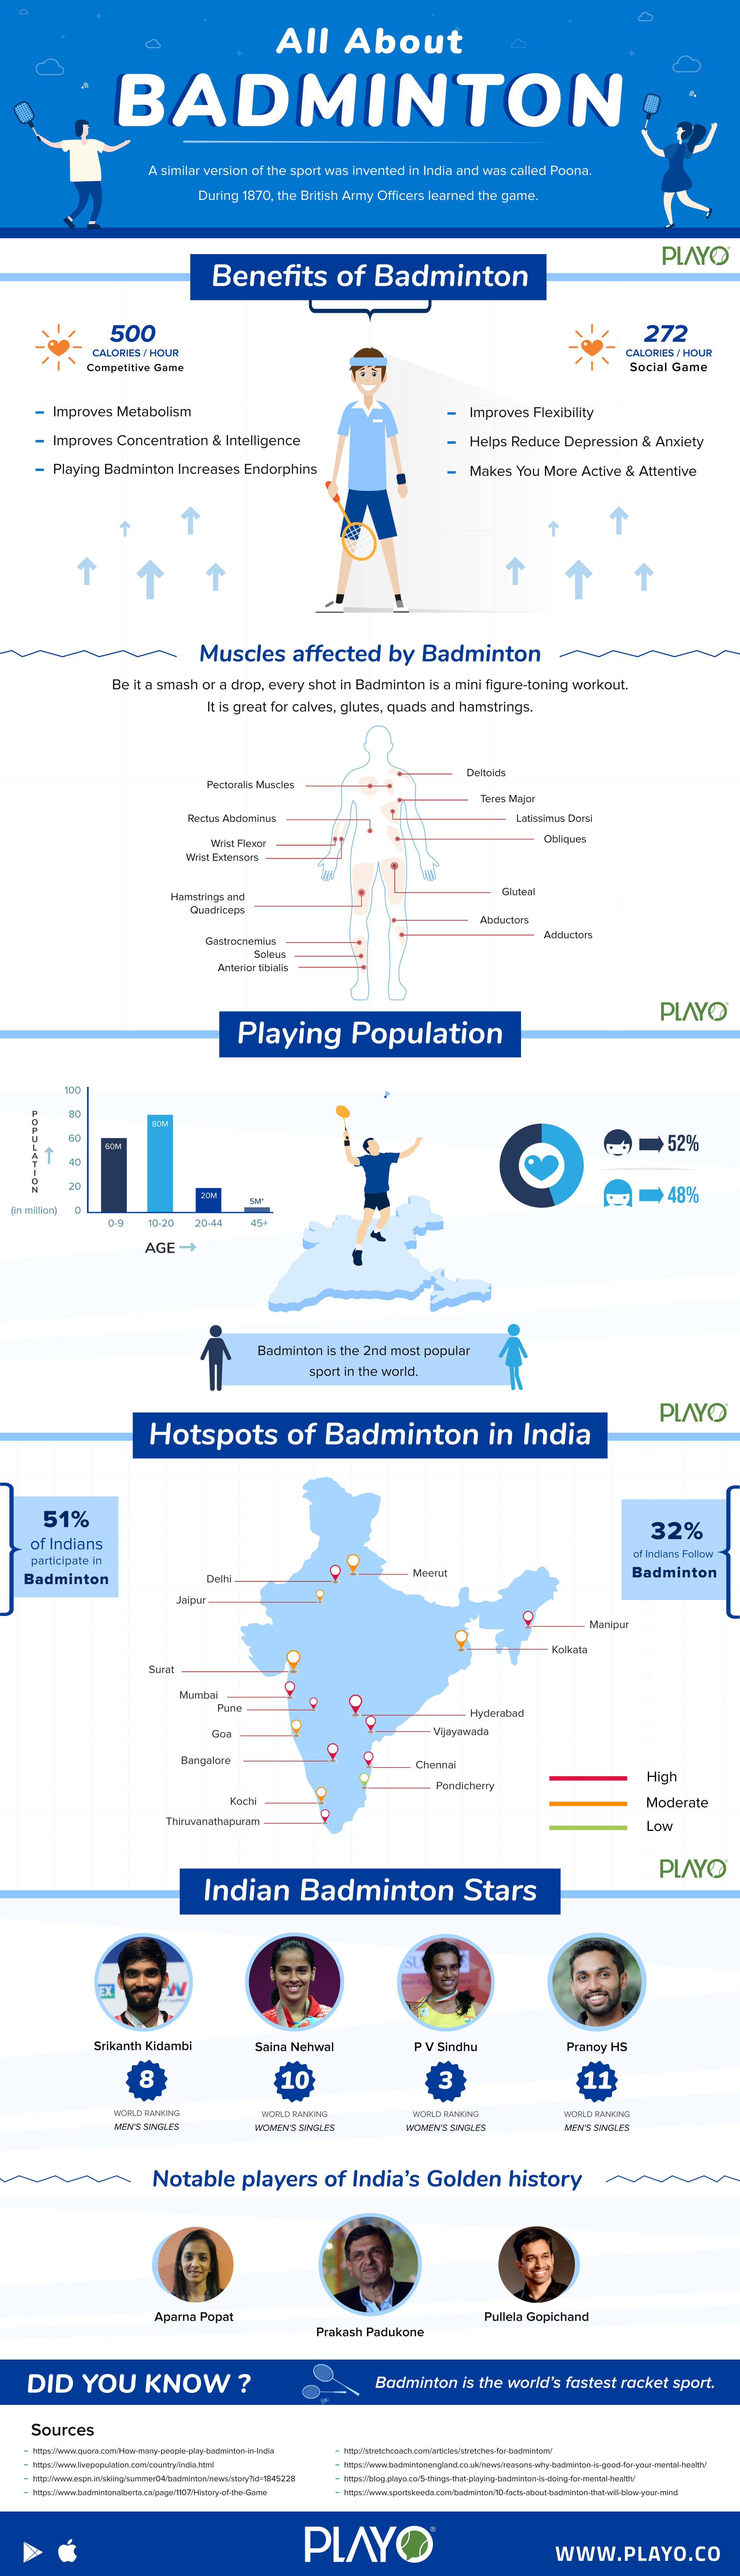 Playo's infographic Badminton.